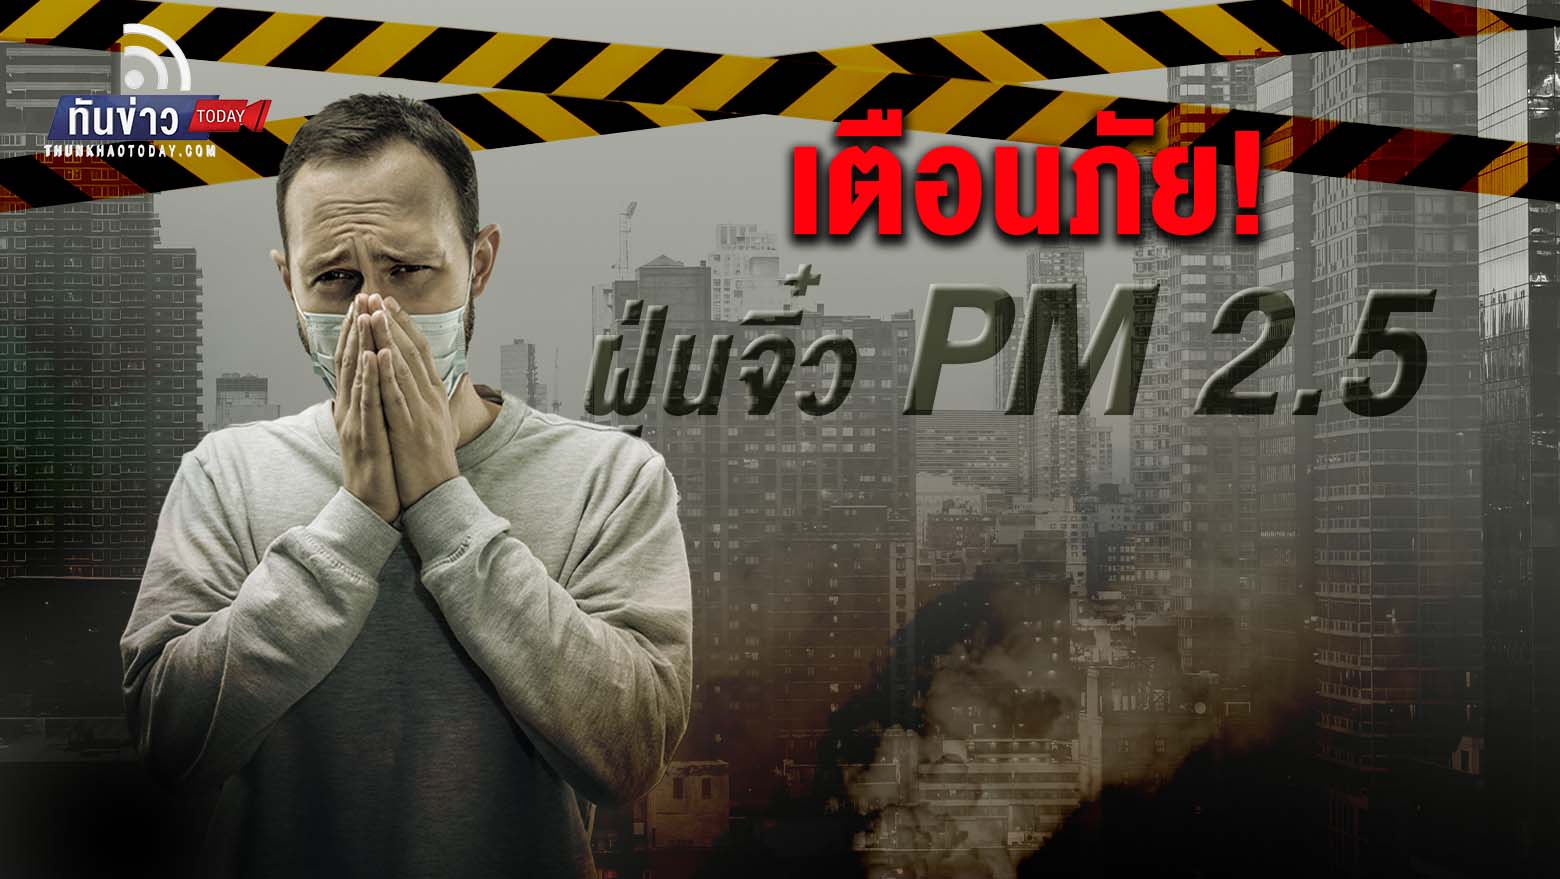 เตือนภัย! ฝุ่นจิ๋ว PM 2.5 กระทบสุขภาพ 24 จังหวัดทั่วประเทศ  กทม. อากาศปิด 31 ม.ค.-1 ก.พ.